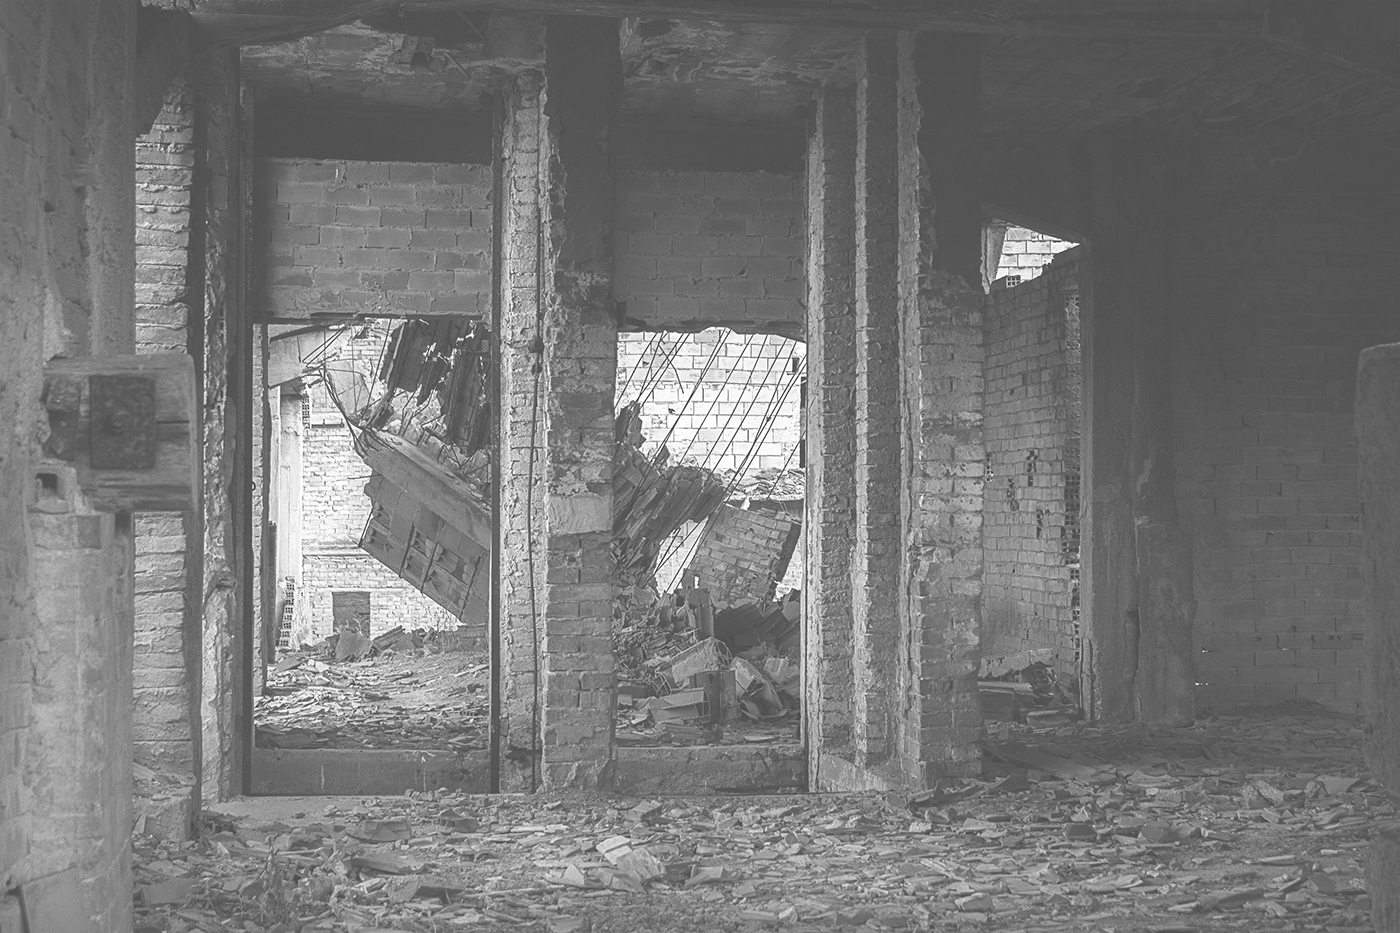 Fotografia addandono abbandonato factory Palermo Fabrica ma Abandonment Termini Imerese